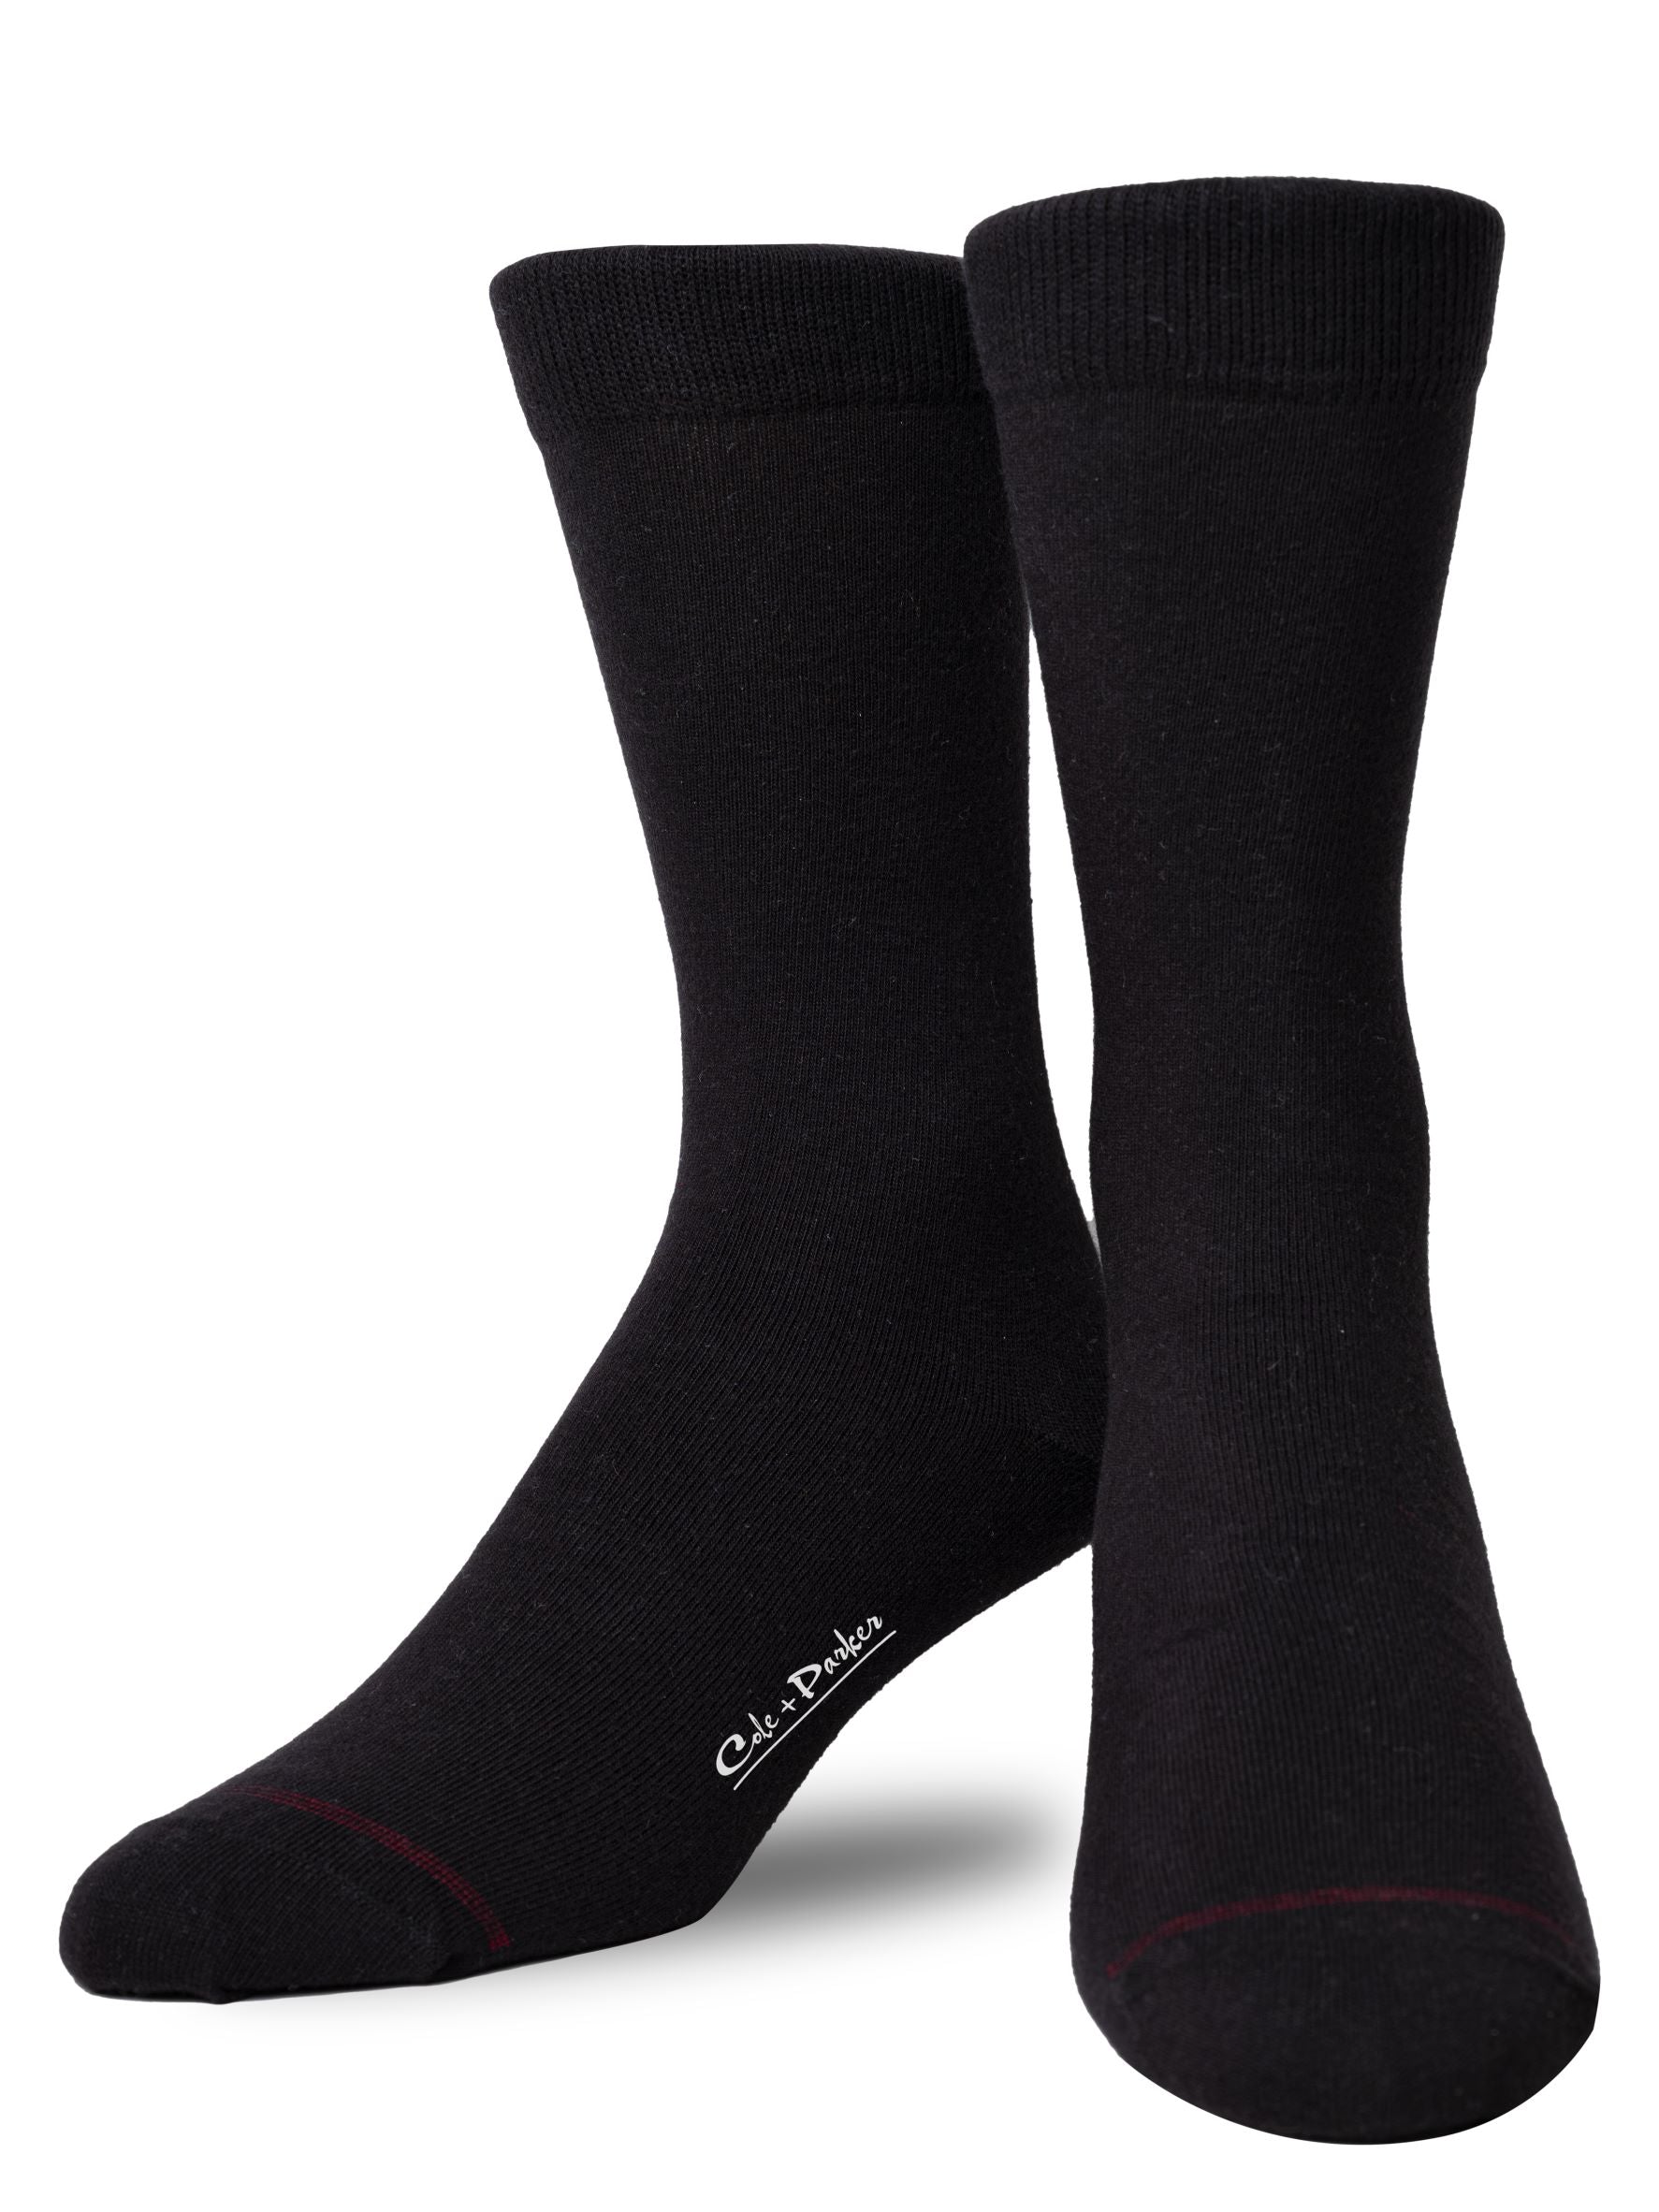 Premium Black Crew Socks